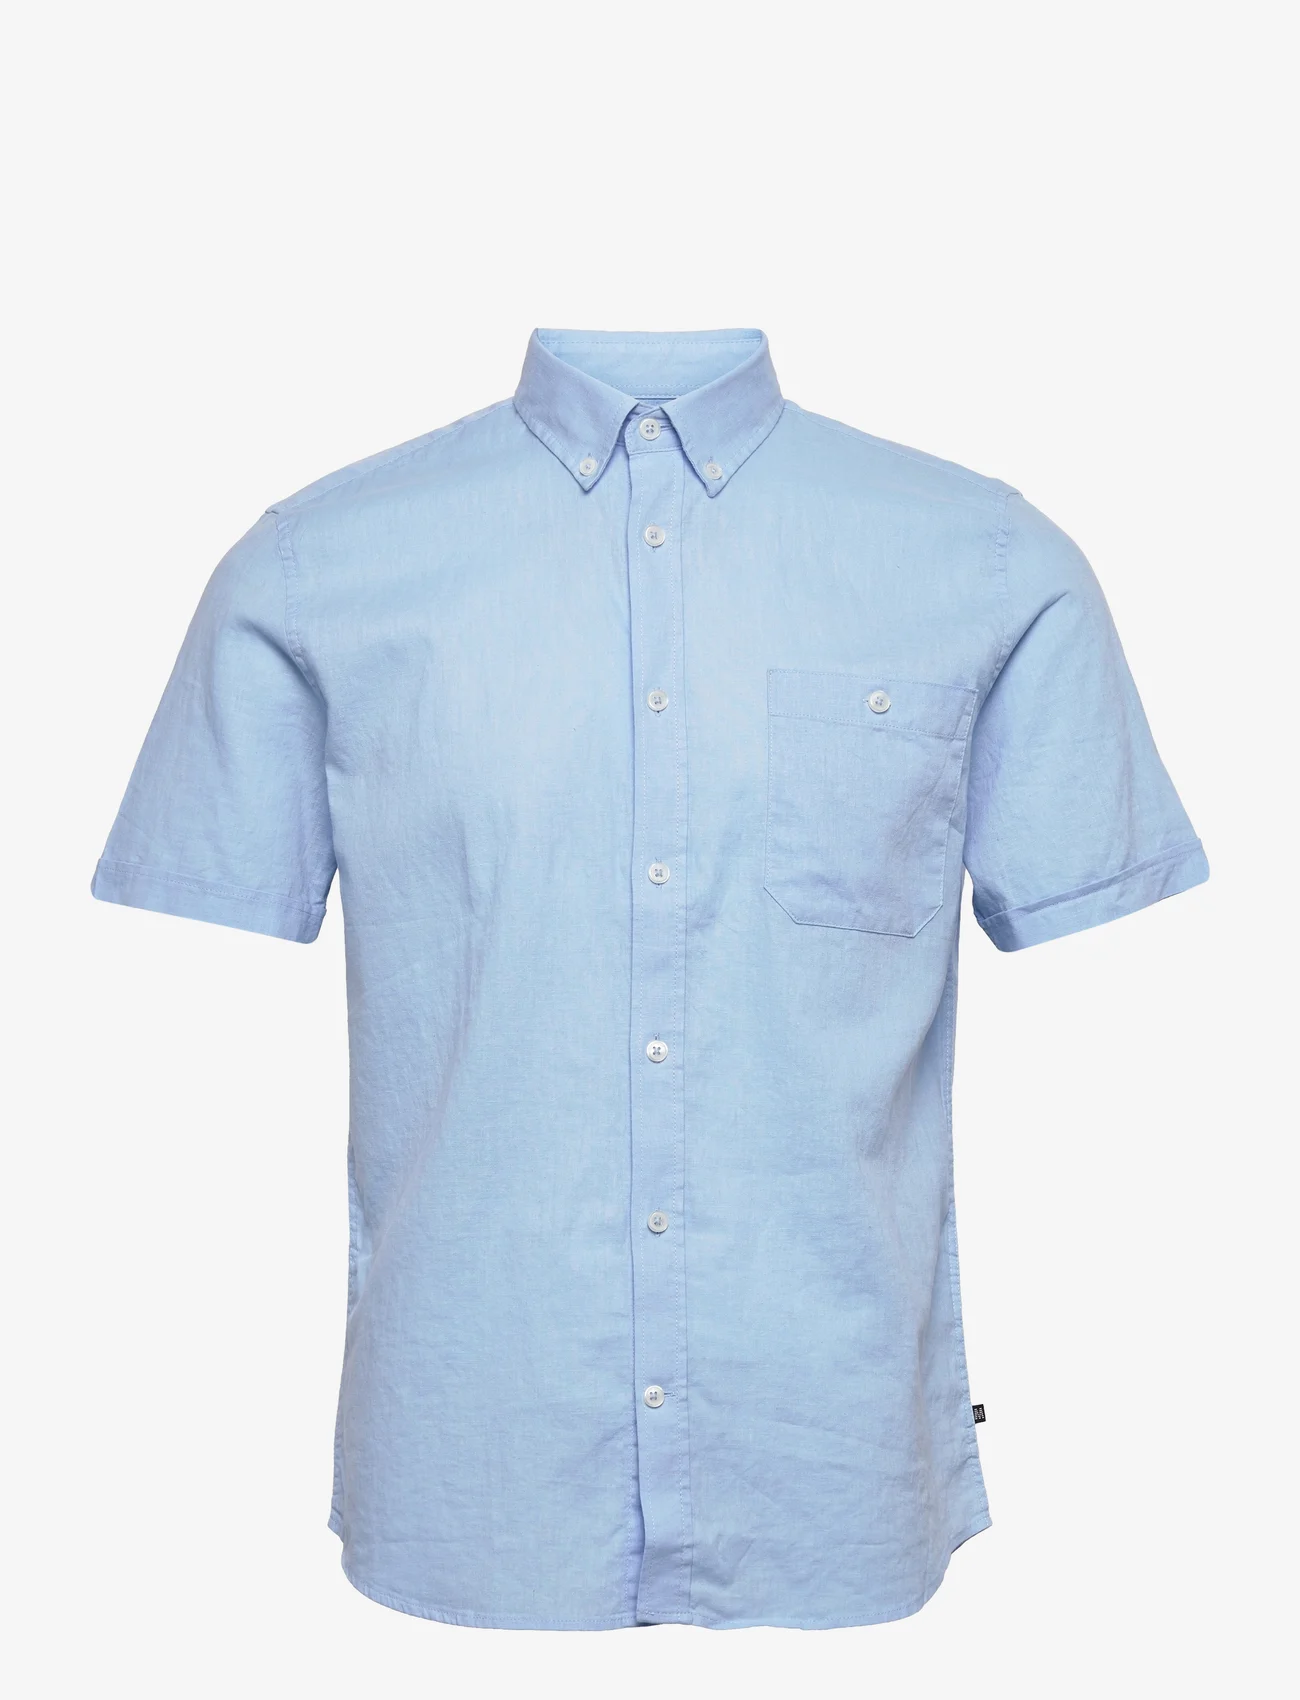 Matinique - MAtrostol BD SS - linen shirts - chambray blue - 0